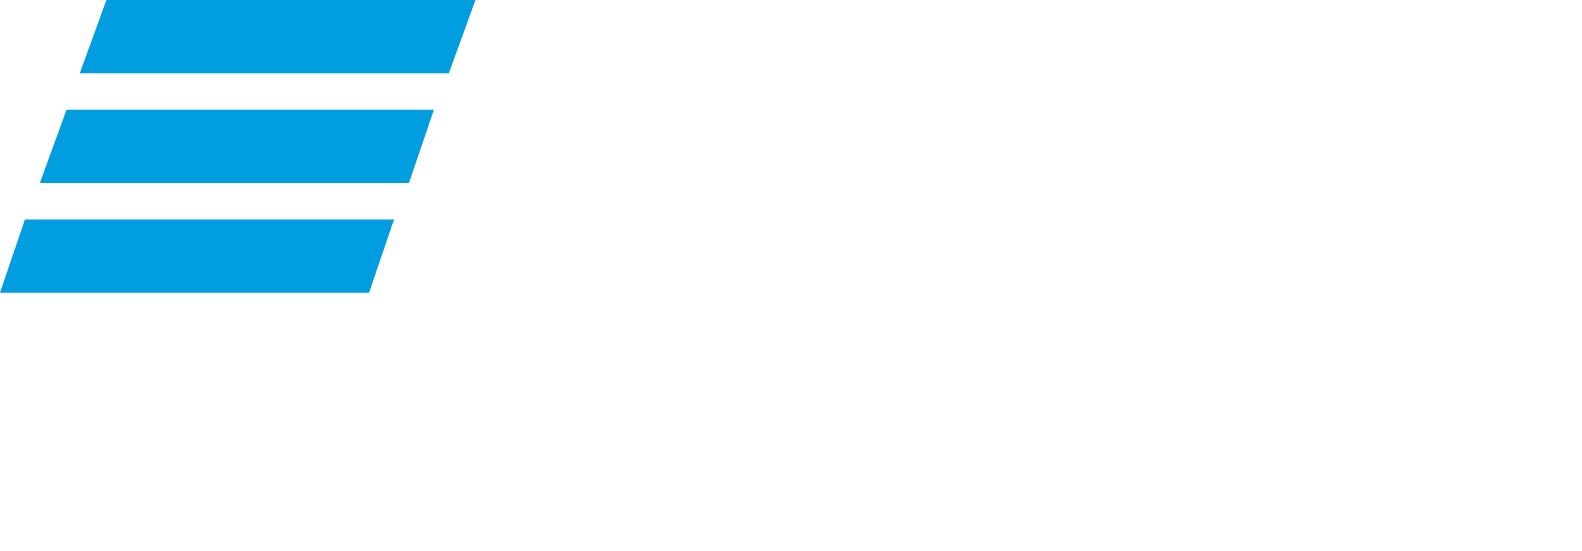 VTB Bank logo grand pour les fonds sombres (PNG transparent)